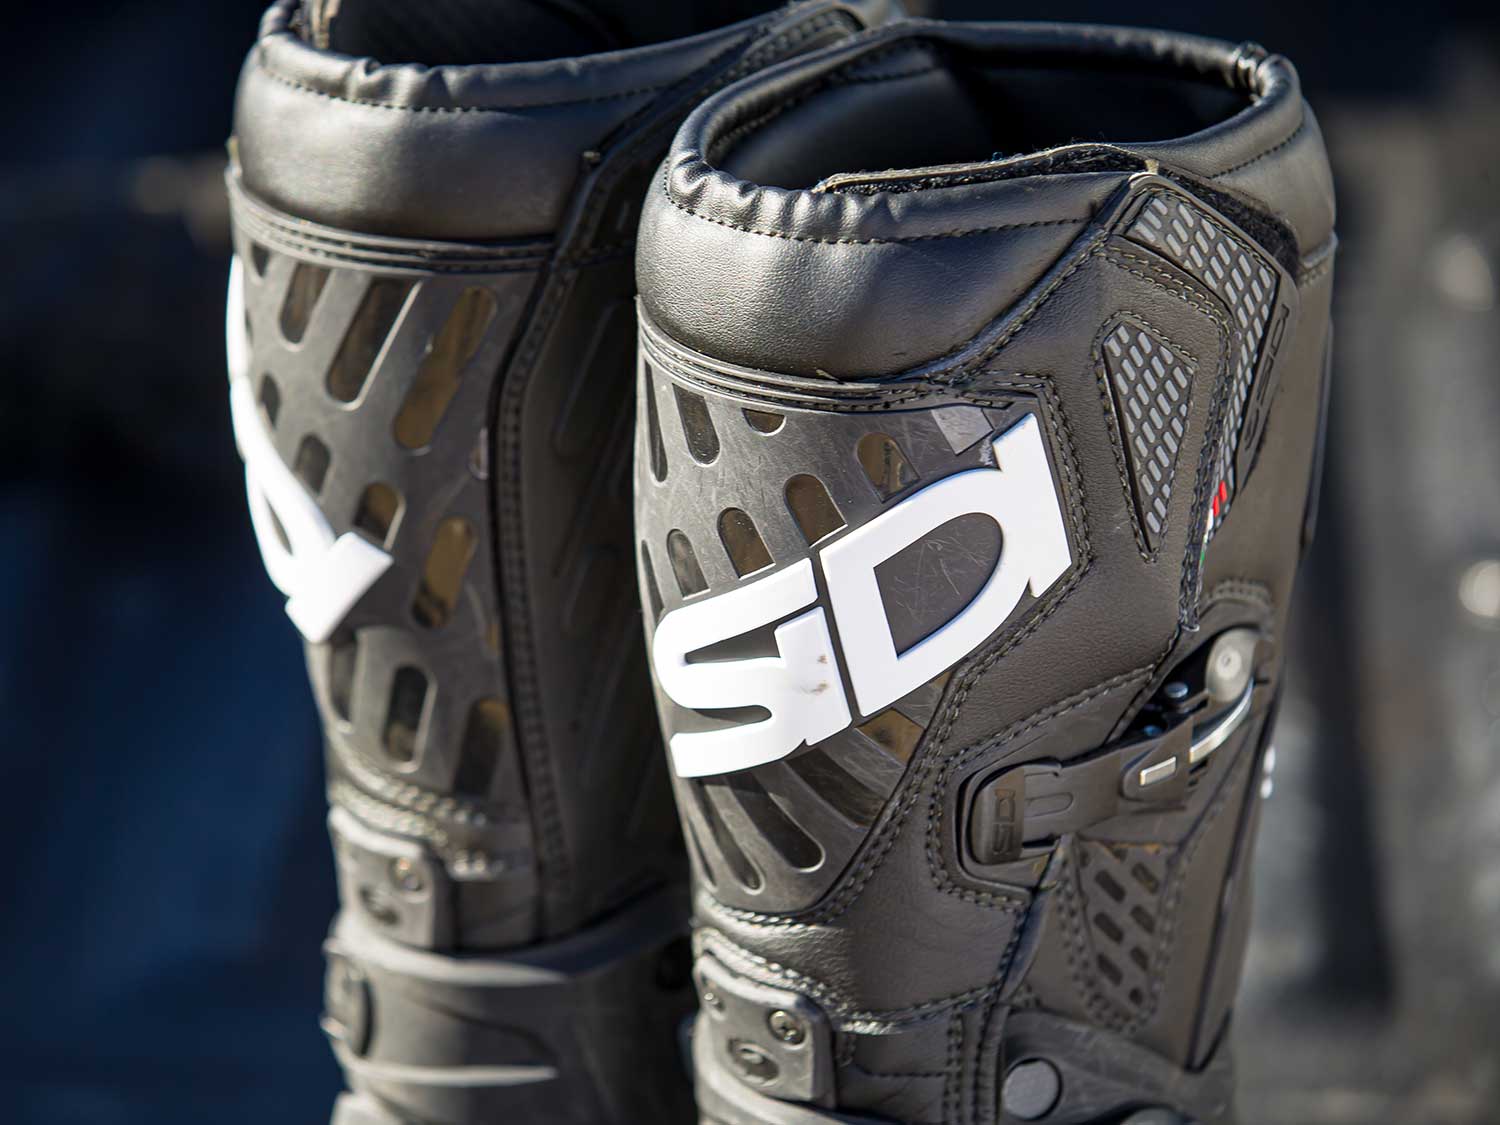 Sidi Sidi Crossfire 3 SRS boot low-cost